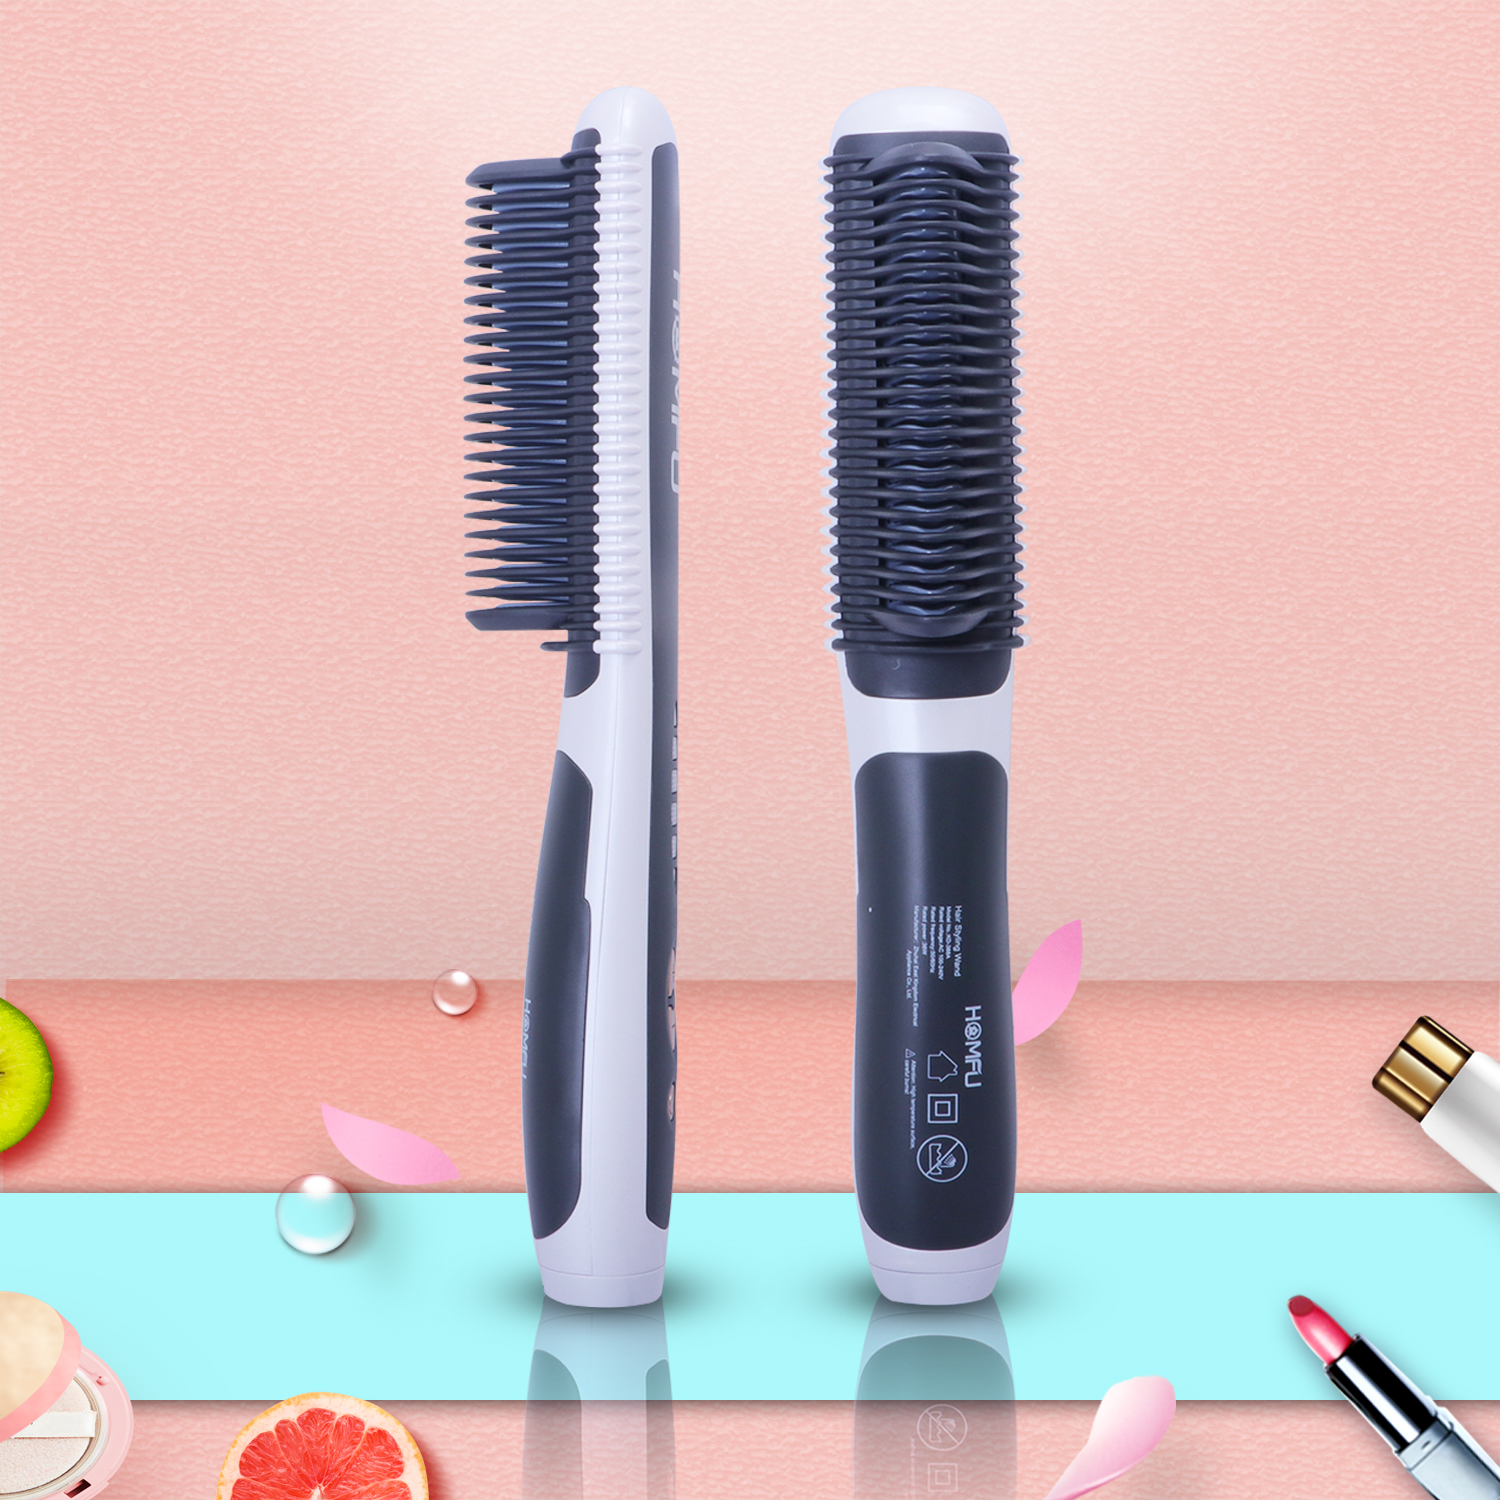 Homfu Hair Straightener Brush - Hair Straightening Iron with Built-in Comb  